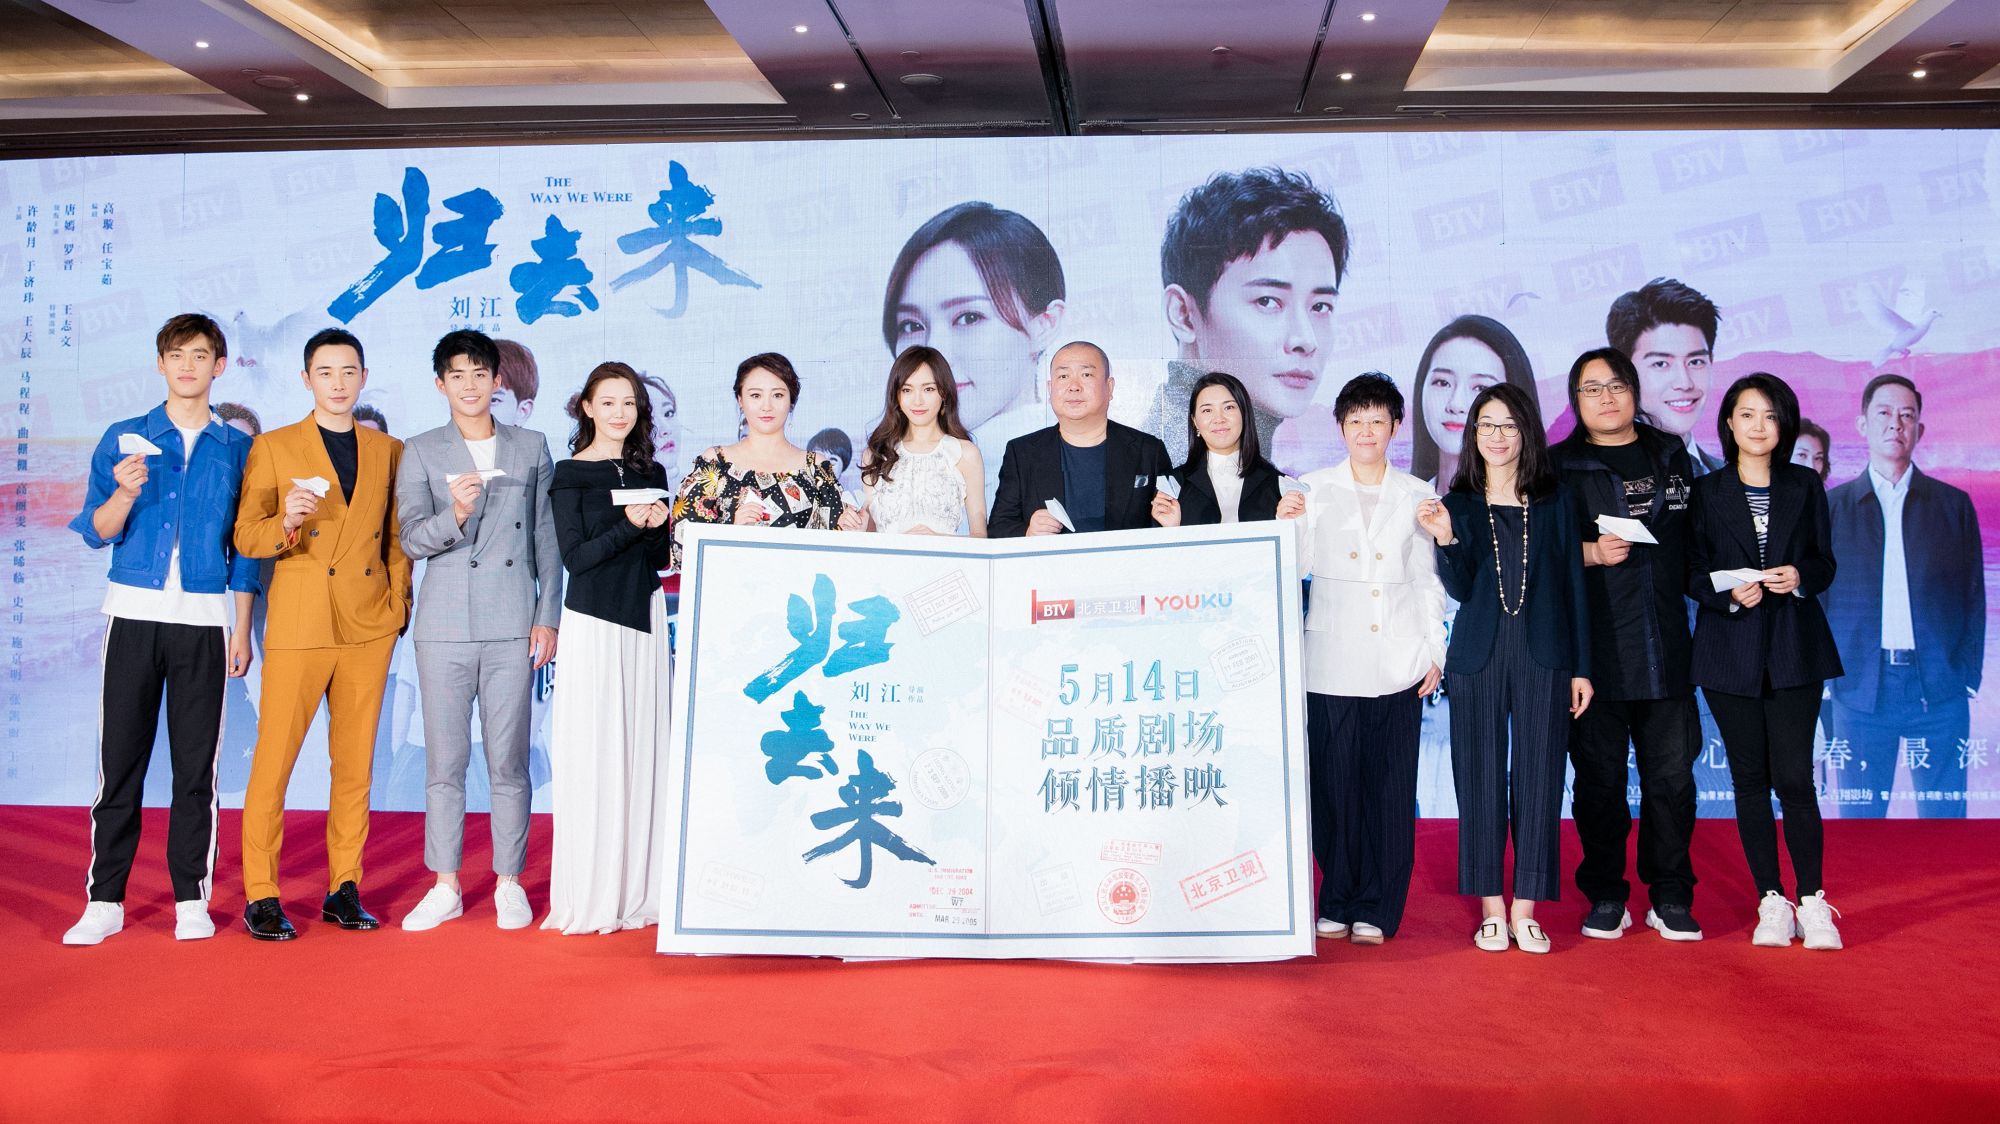 演员王天辰主演的现实主义大剧《归去来》在北京举行了开播发布会